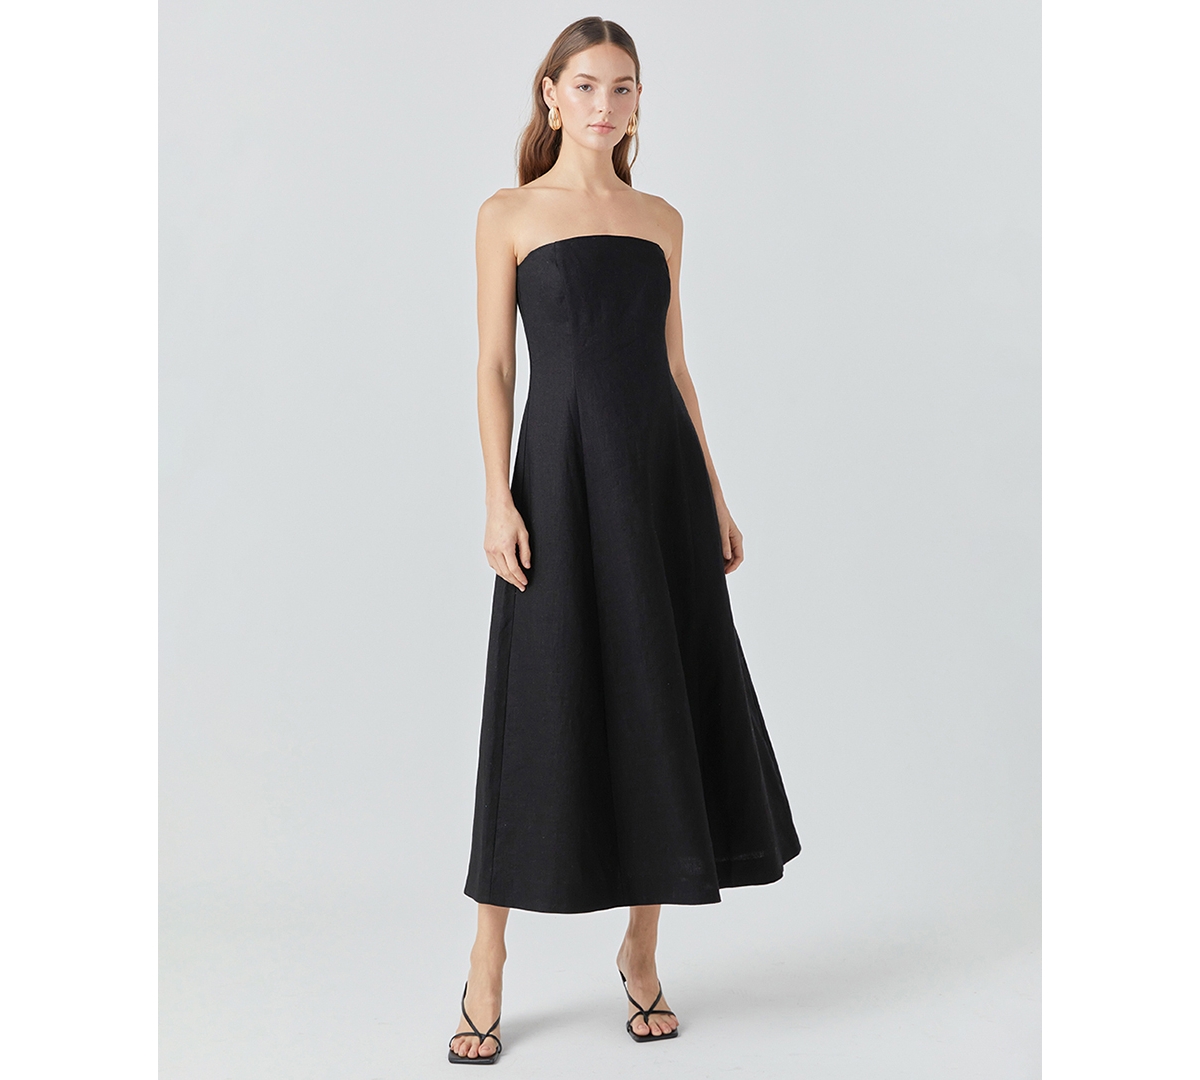 Women's Strapless Evening Dress - Black